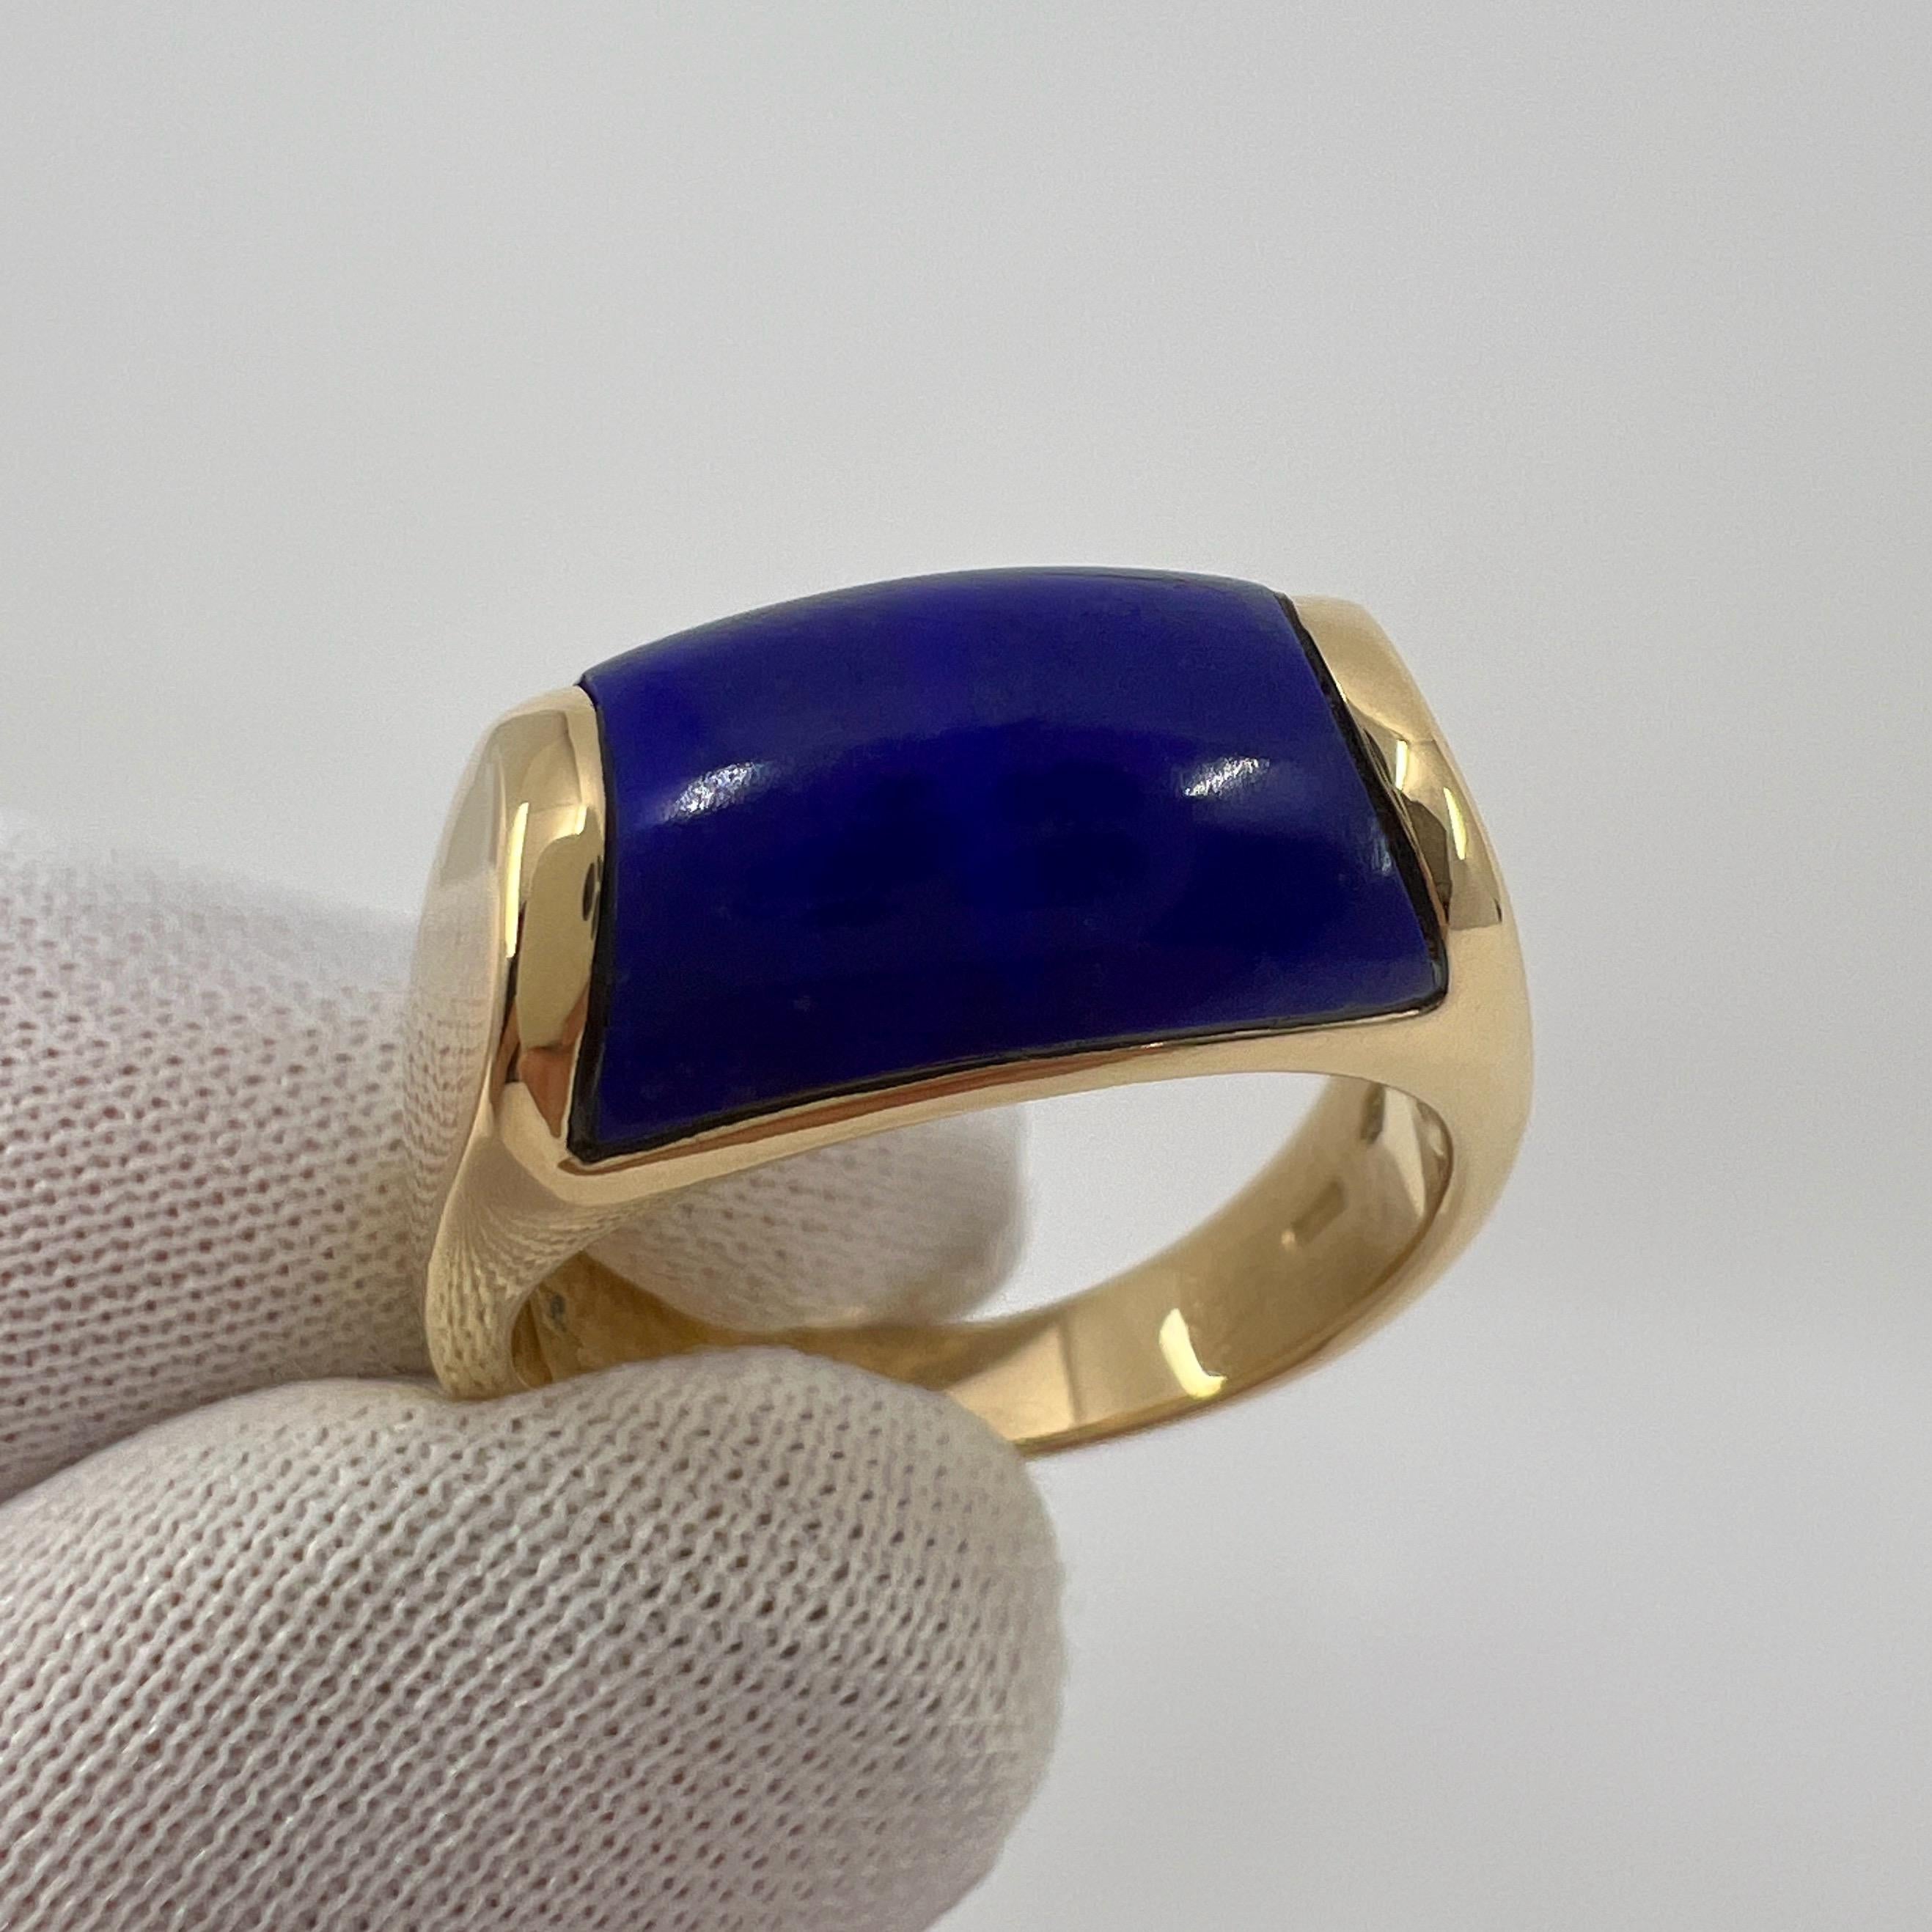 Bvlgari Bulgari Tronchetto 18k Yellow Gold Lapis Lazuli Ring with Box US6 EU52 For Sale 1